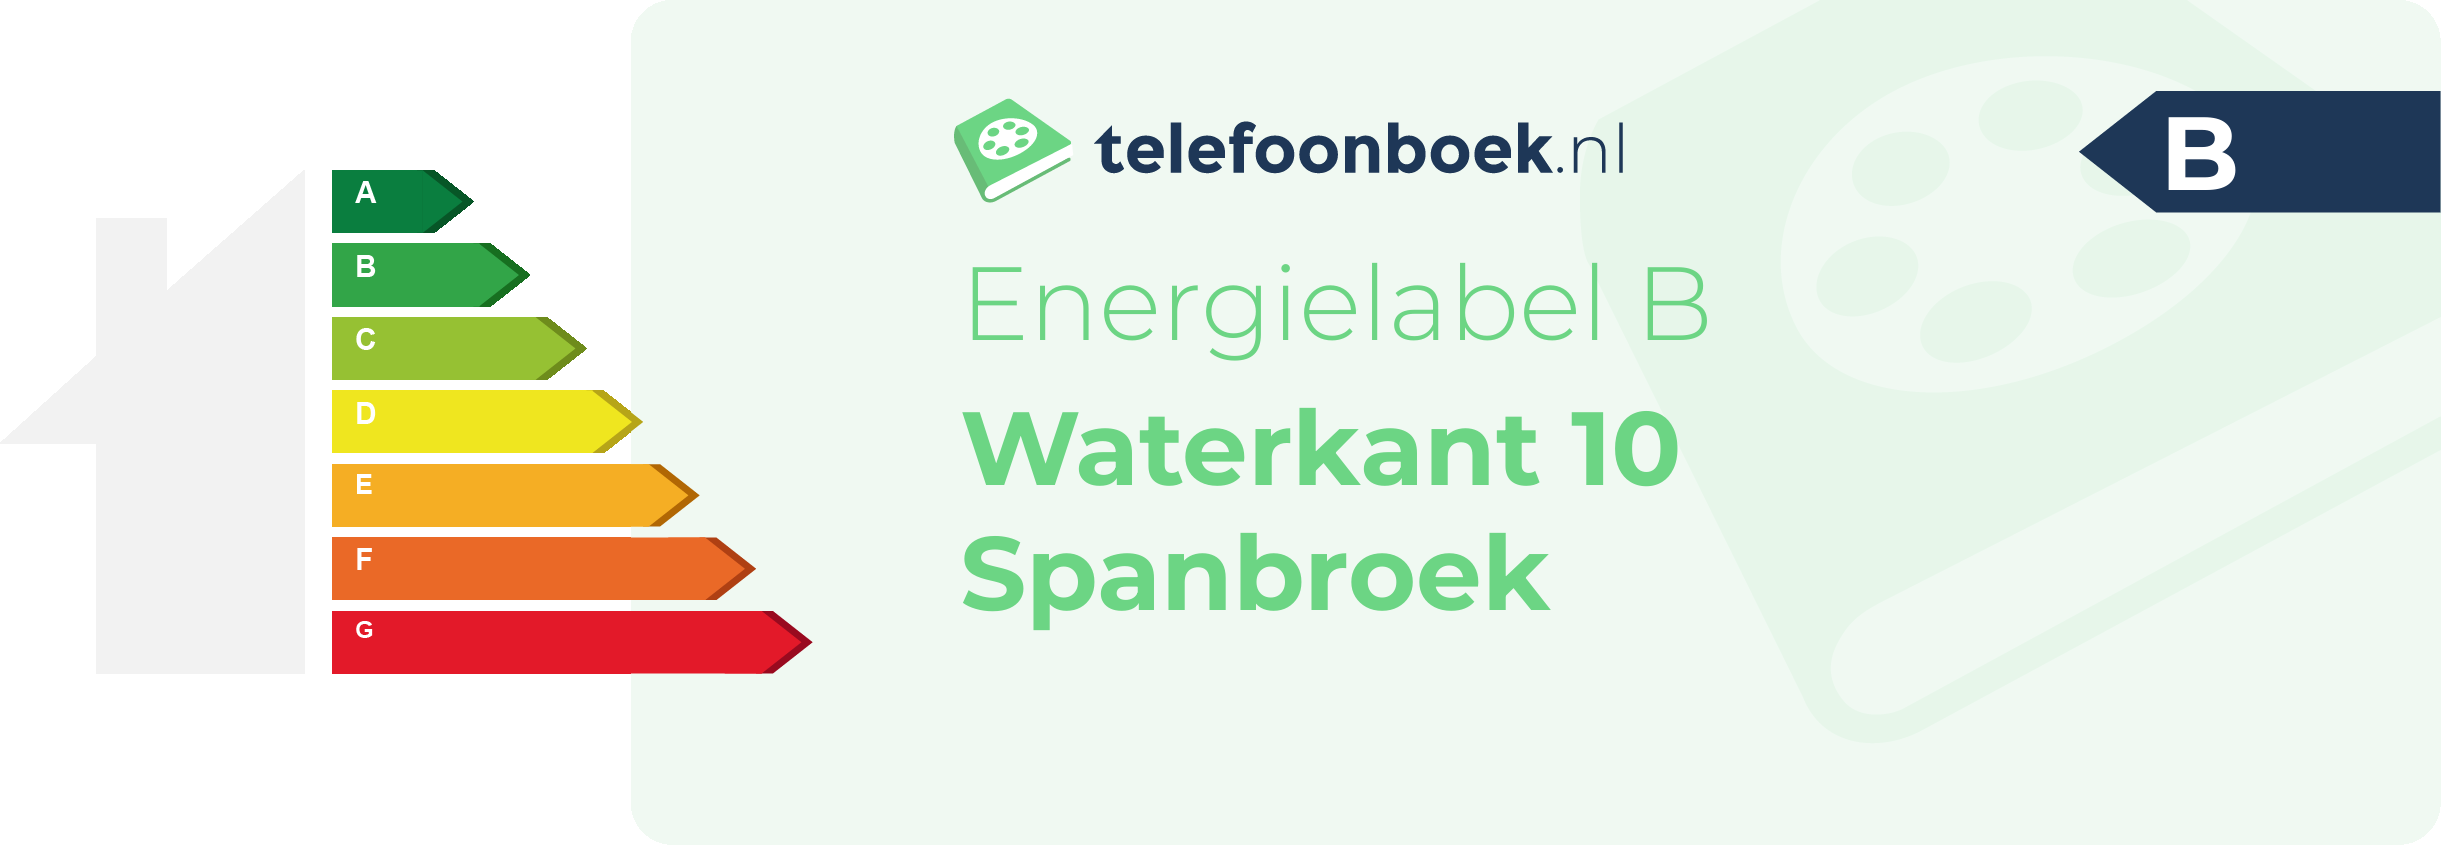 Energielabel Waterkant 10 Spanbroek